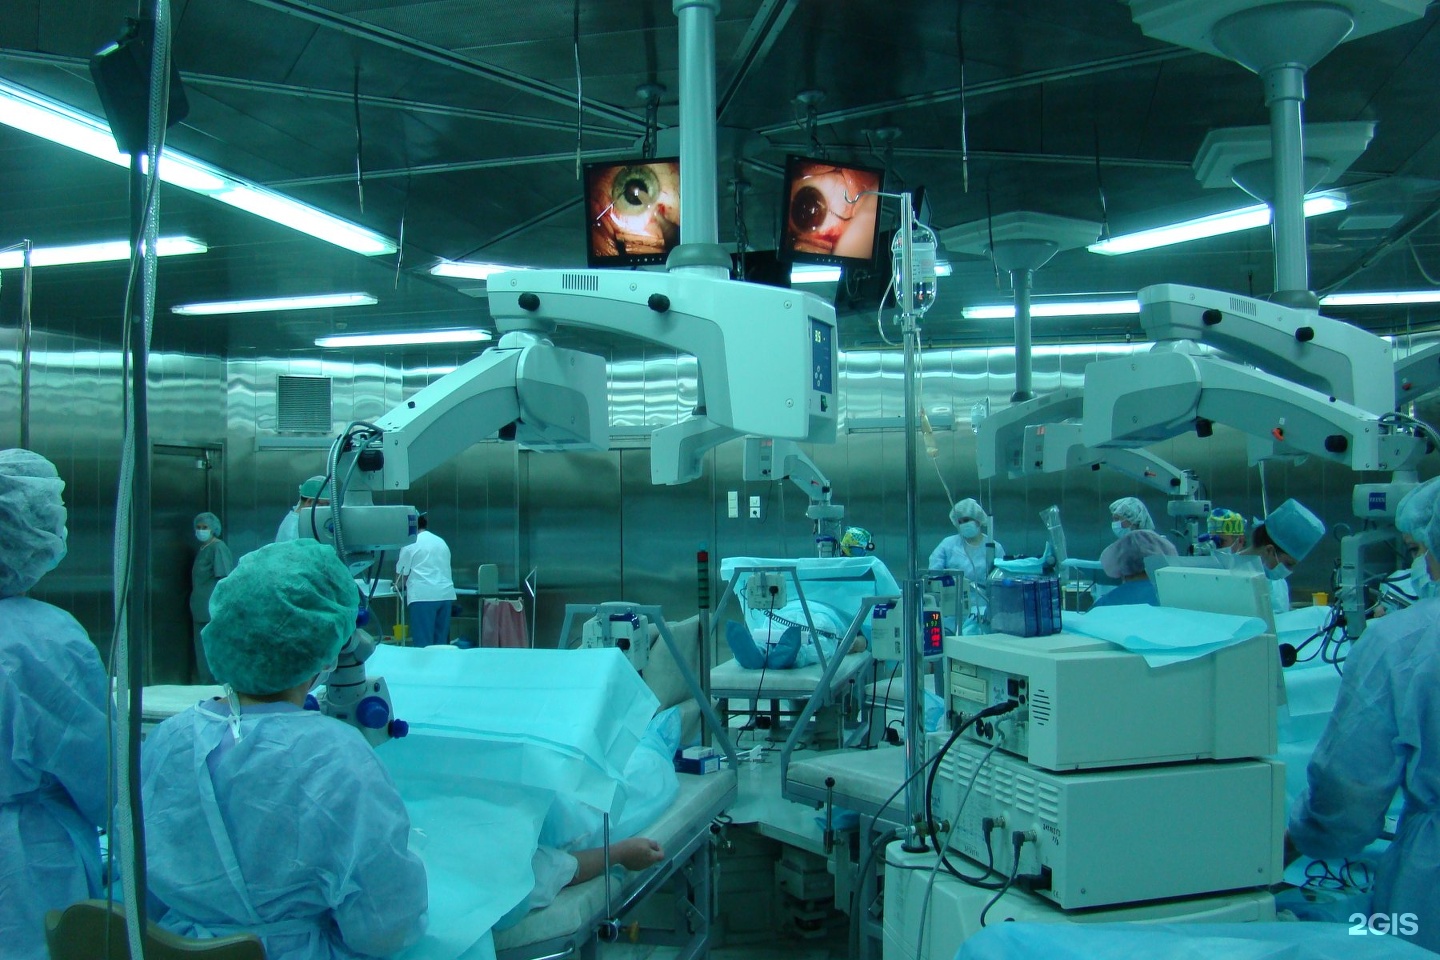 Новосибирский филиал микрохирургии глаза им федорова